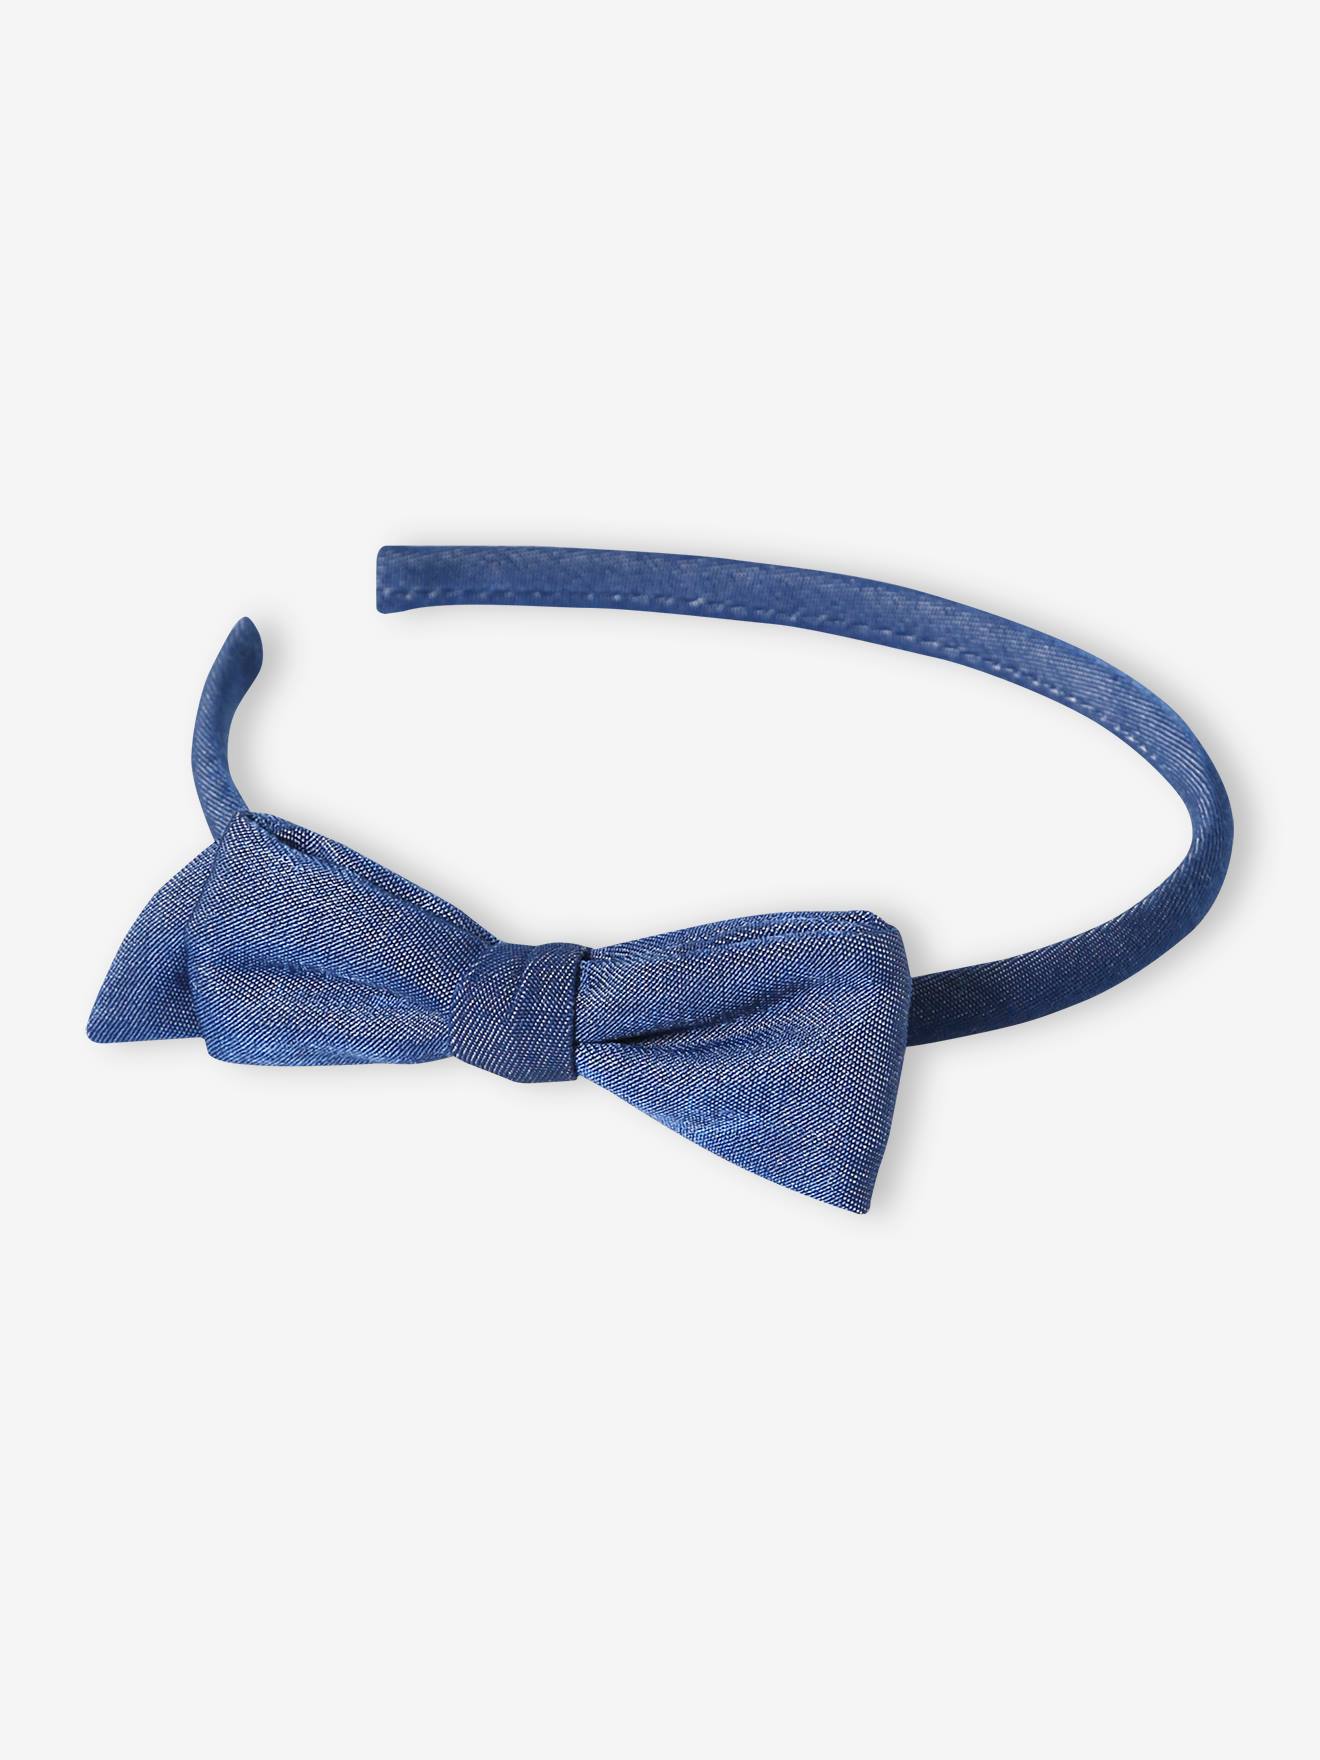 Haarband met stoffen strik blauw, bedrukt